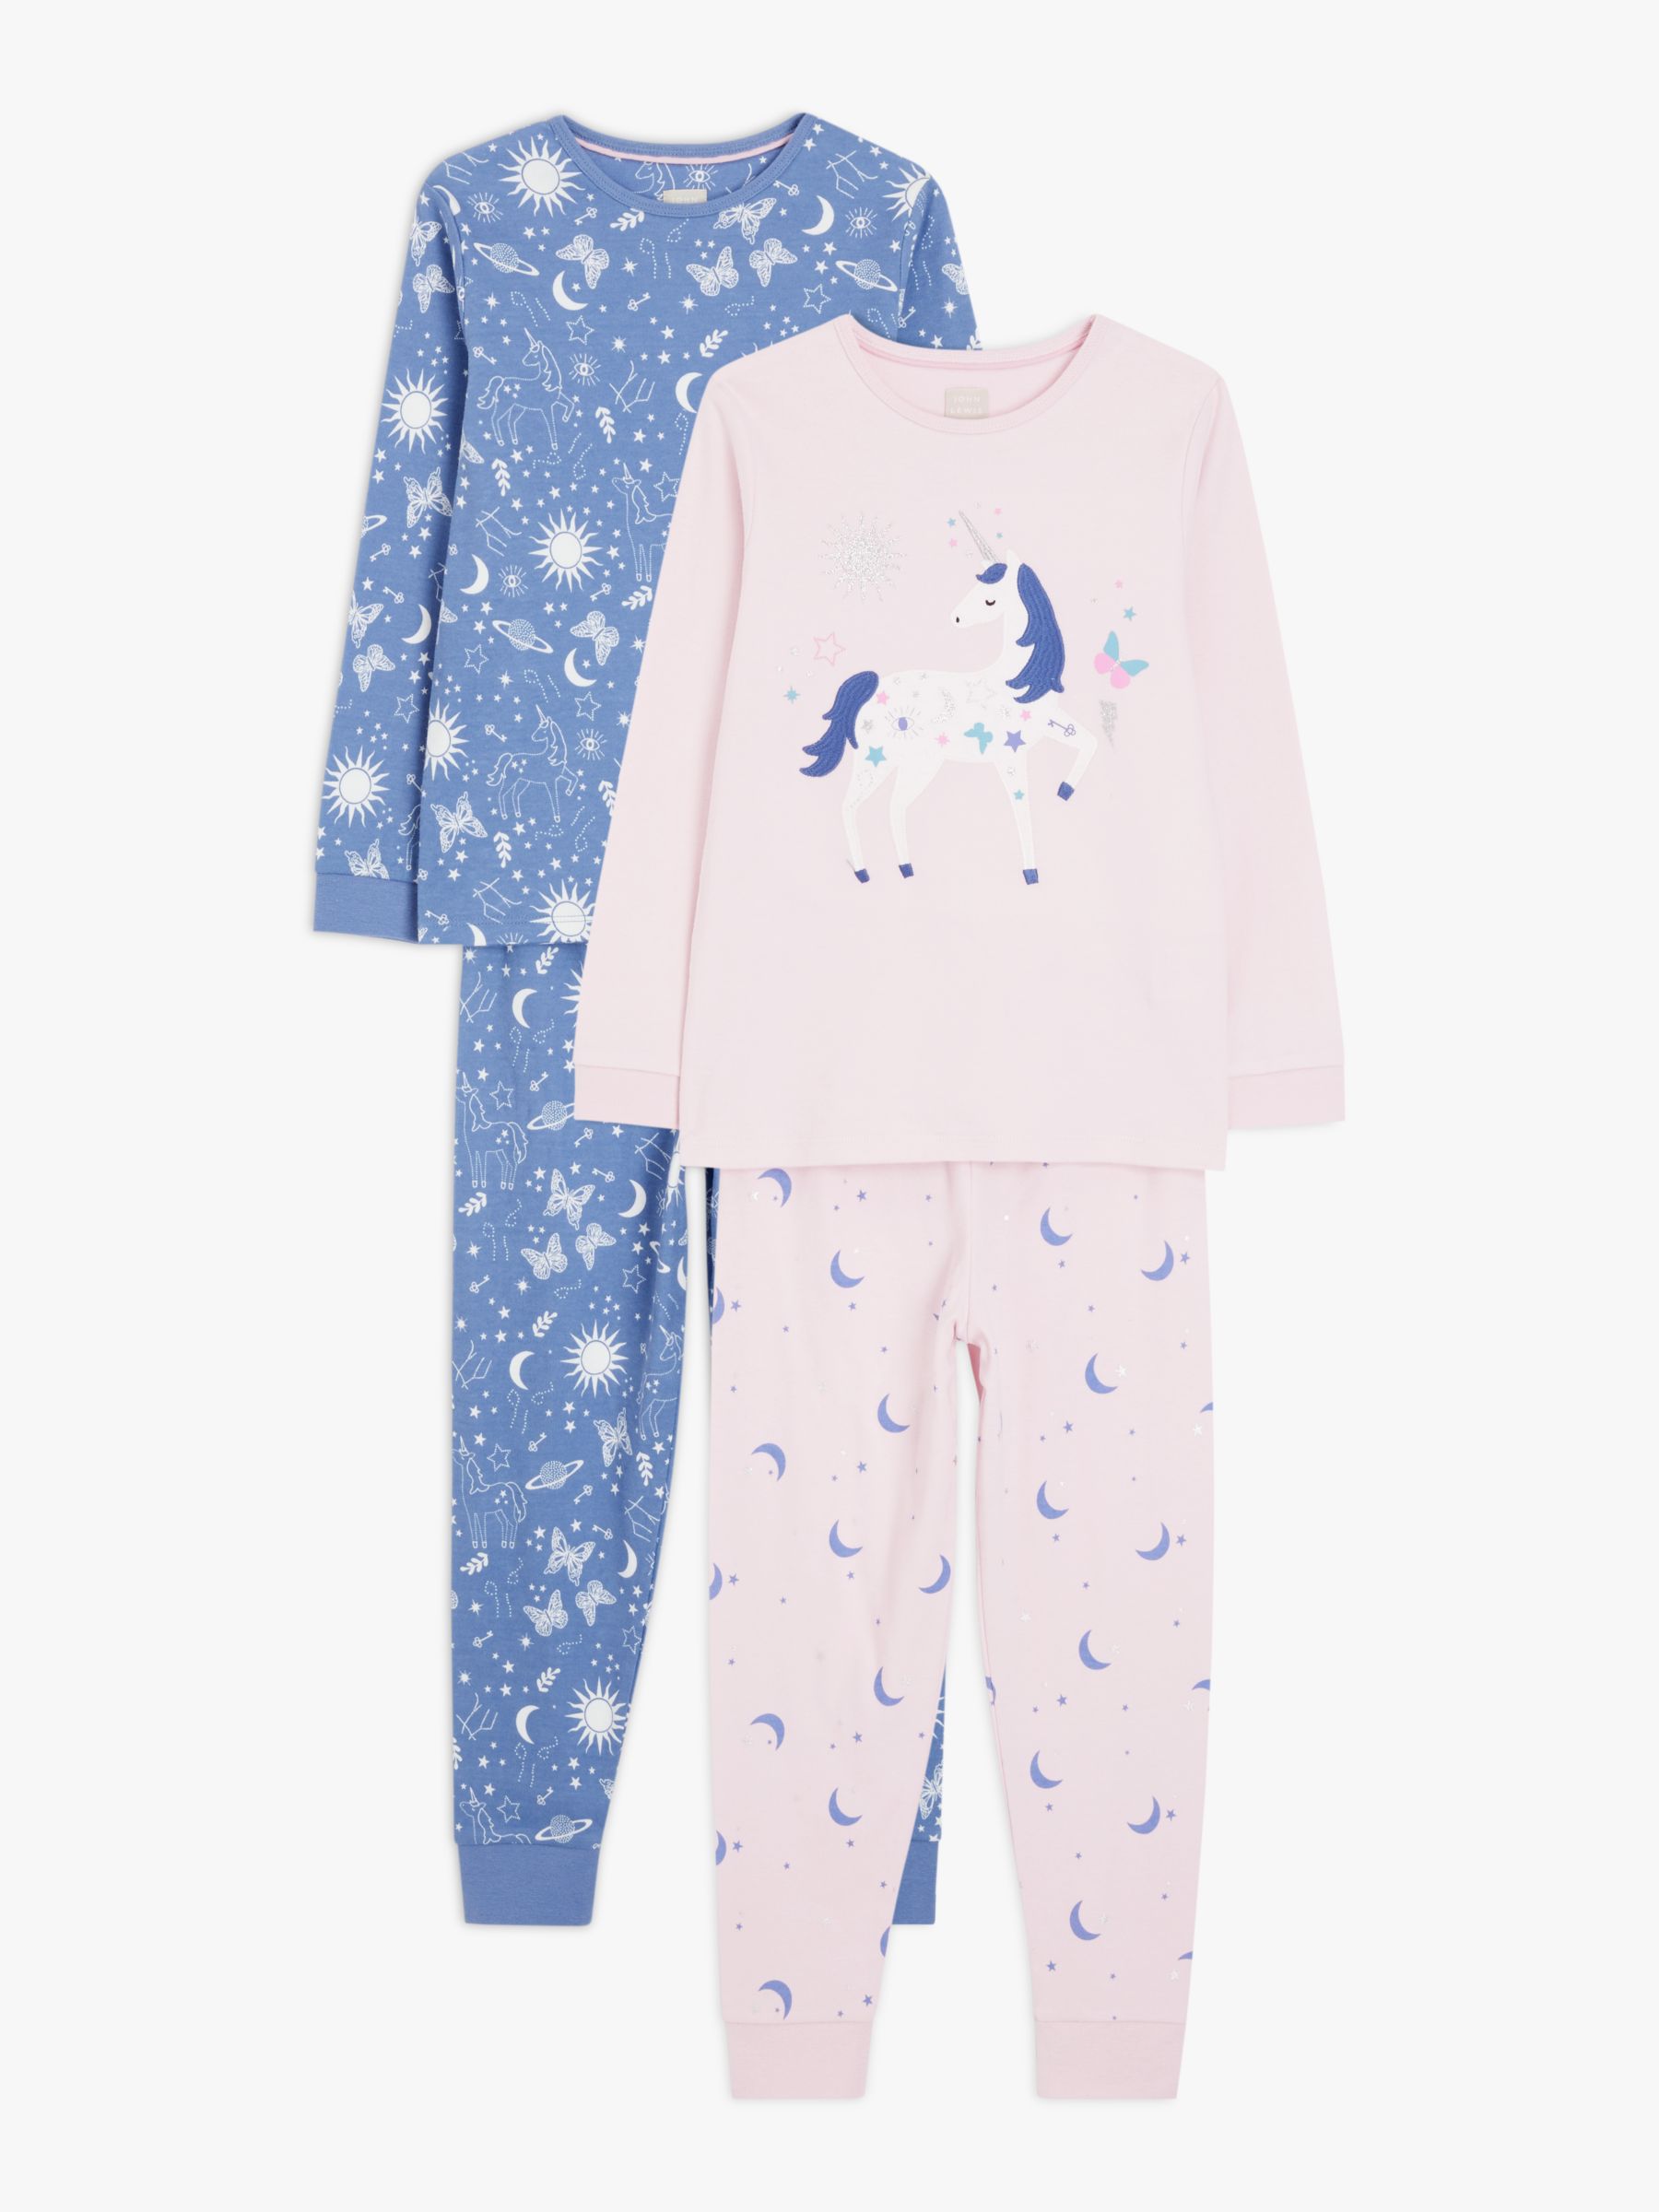 Nighty Night 12 Months Pajamas Clothing Boys Clothing Pyjamas & Robes Pyjamas 